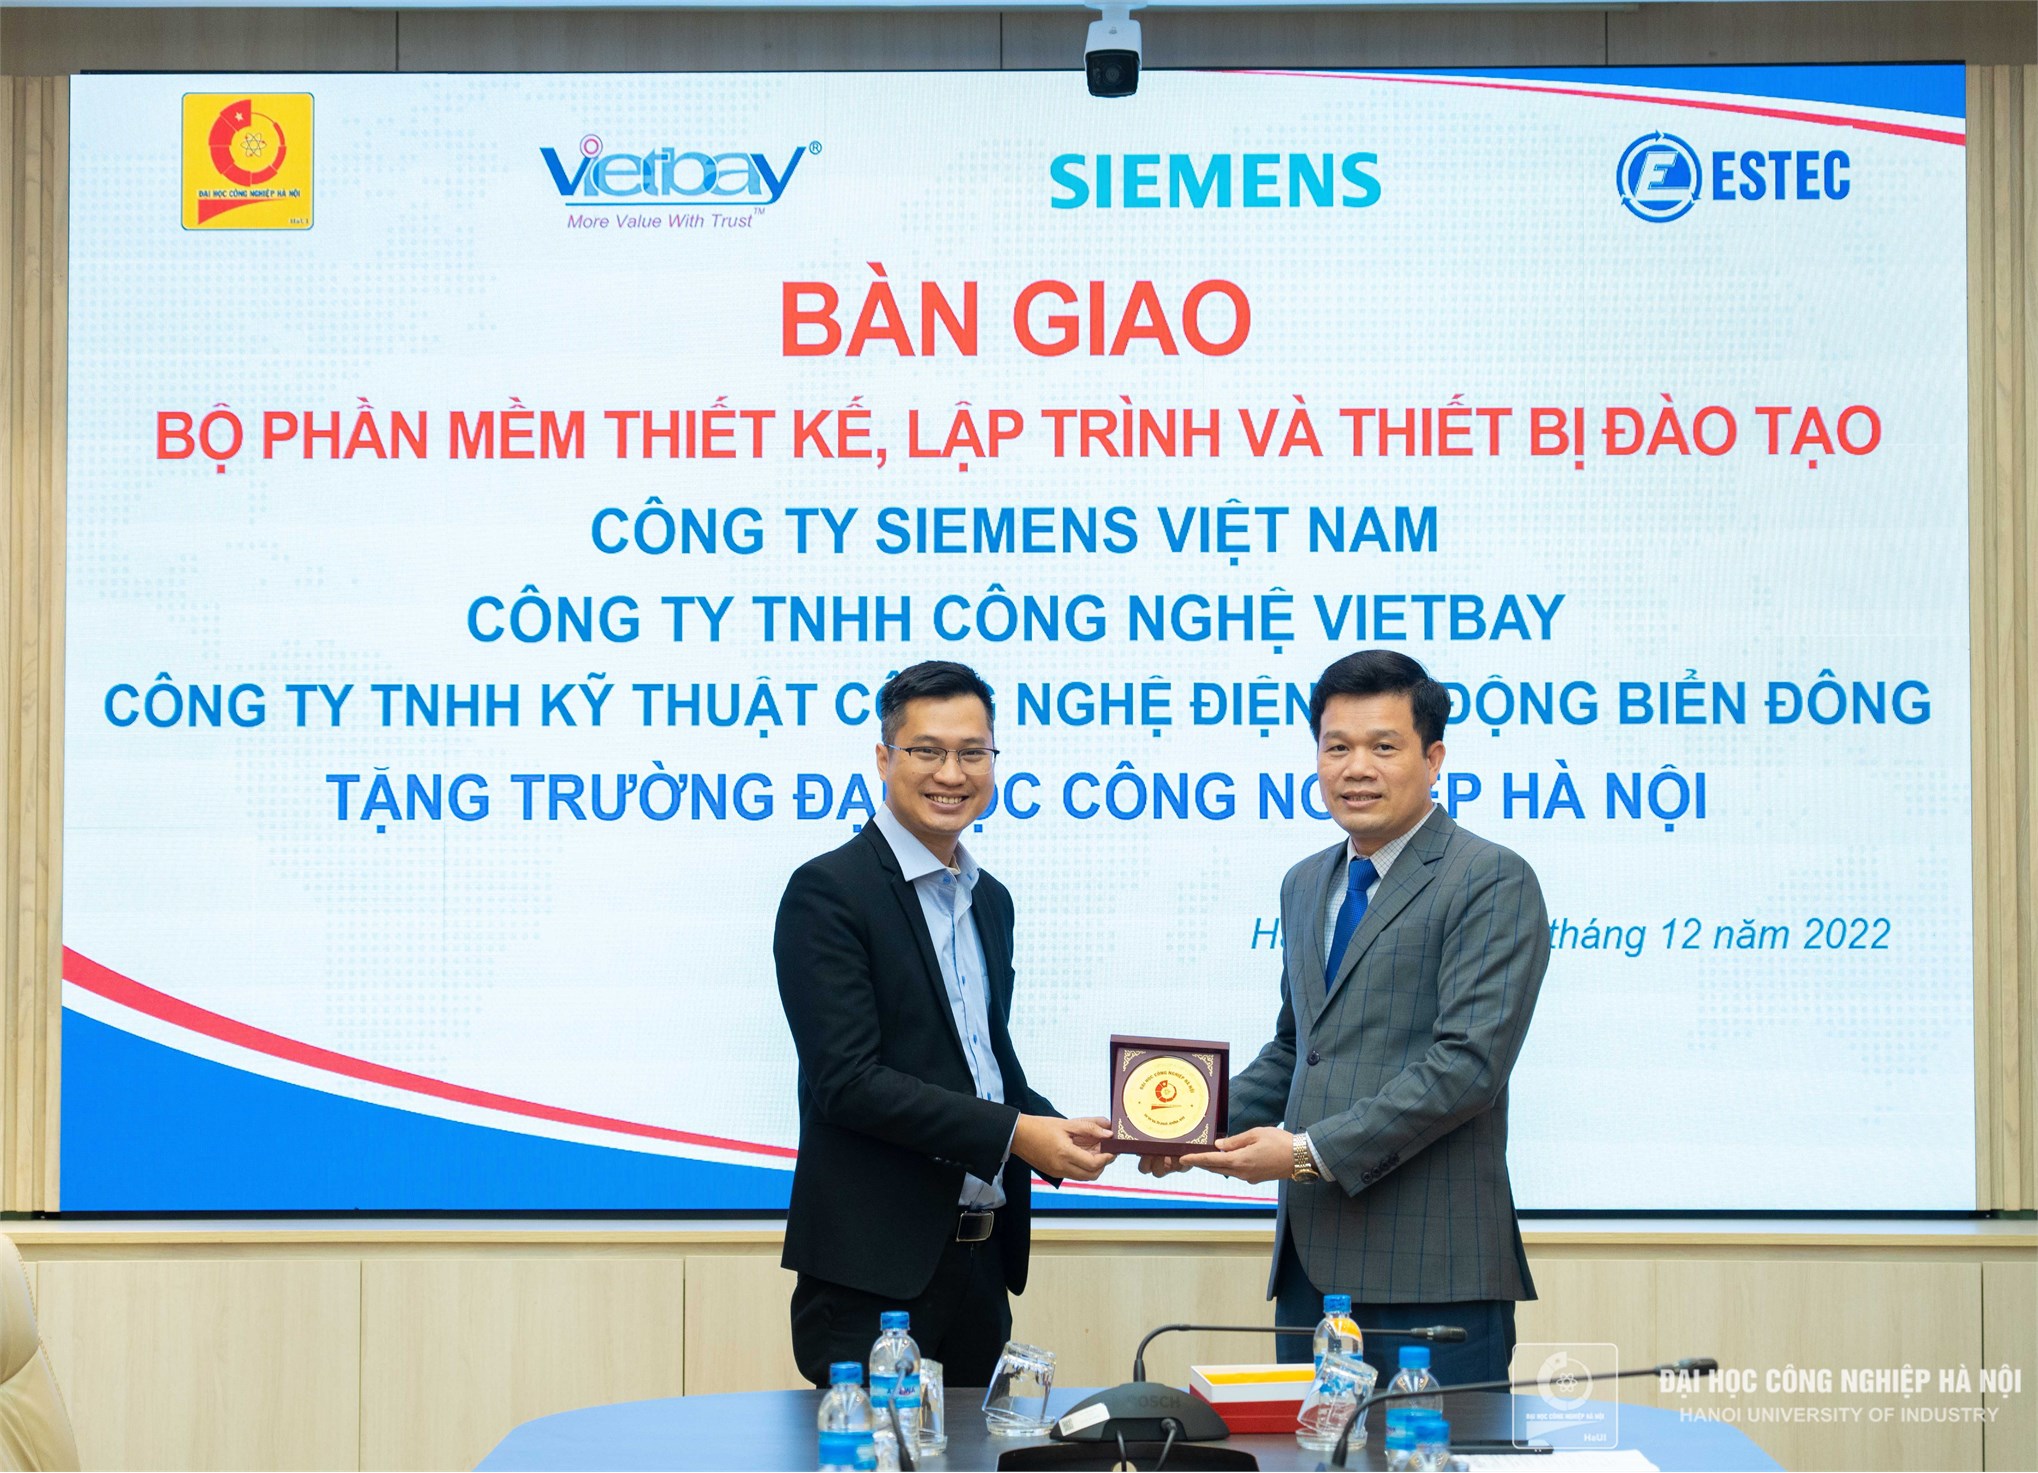 Đại học Công nghiệp Hà Nội nhận bàn giao bộ phần mềm thiết kế, lập trình và thiết bị đào tạo hãng Siemens tài trợ